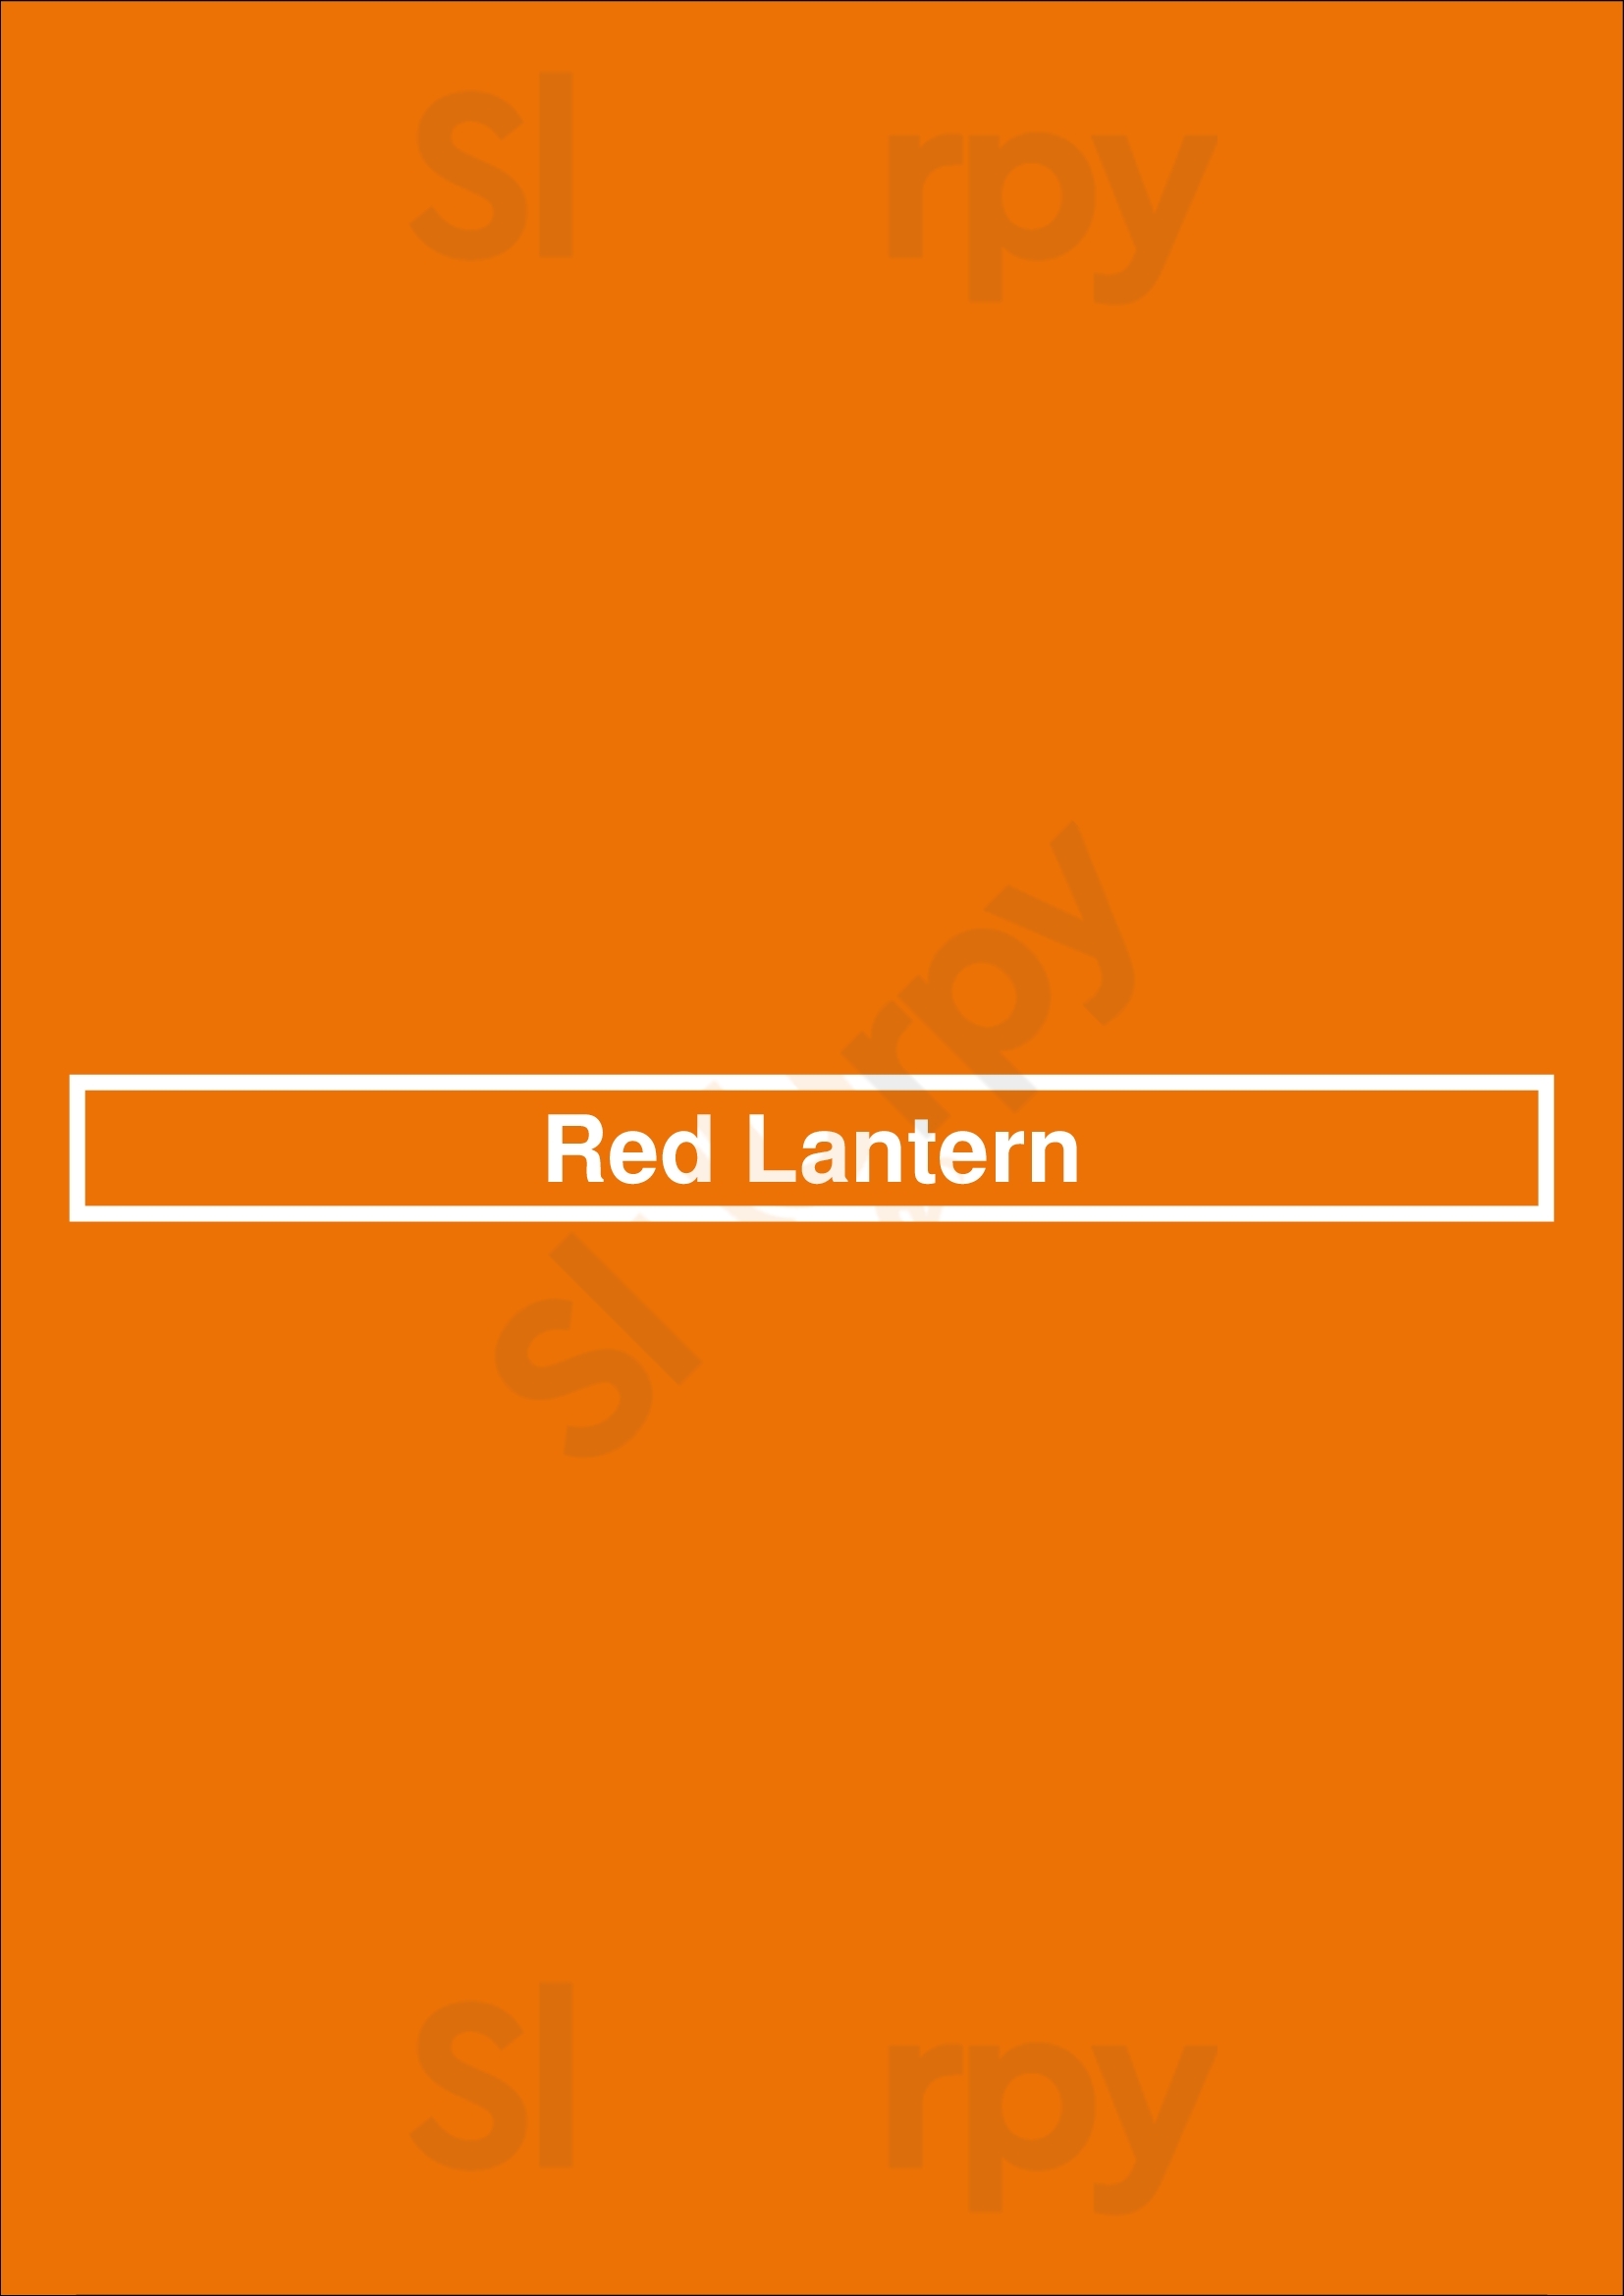 Red Lantern El Paso Menu - 1